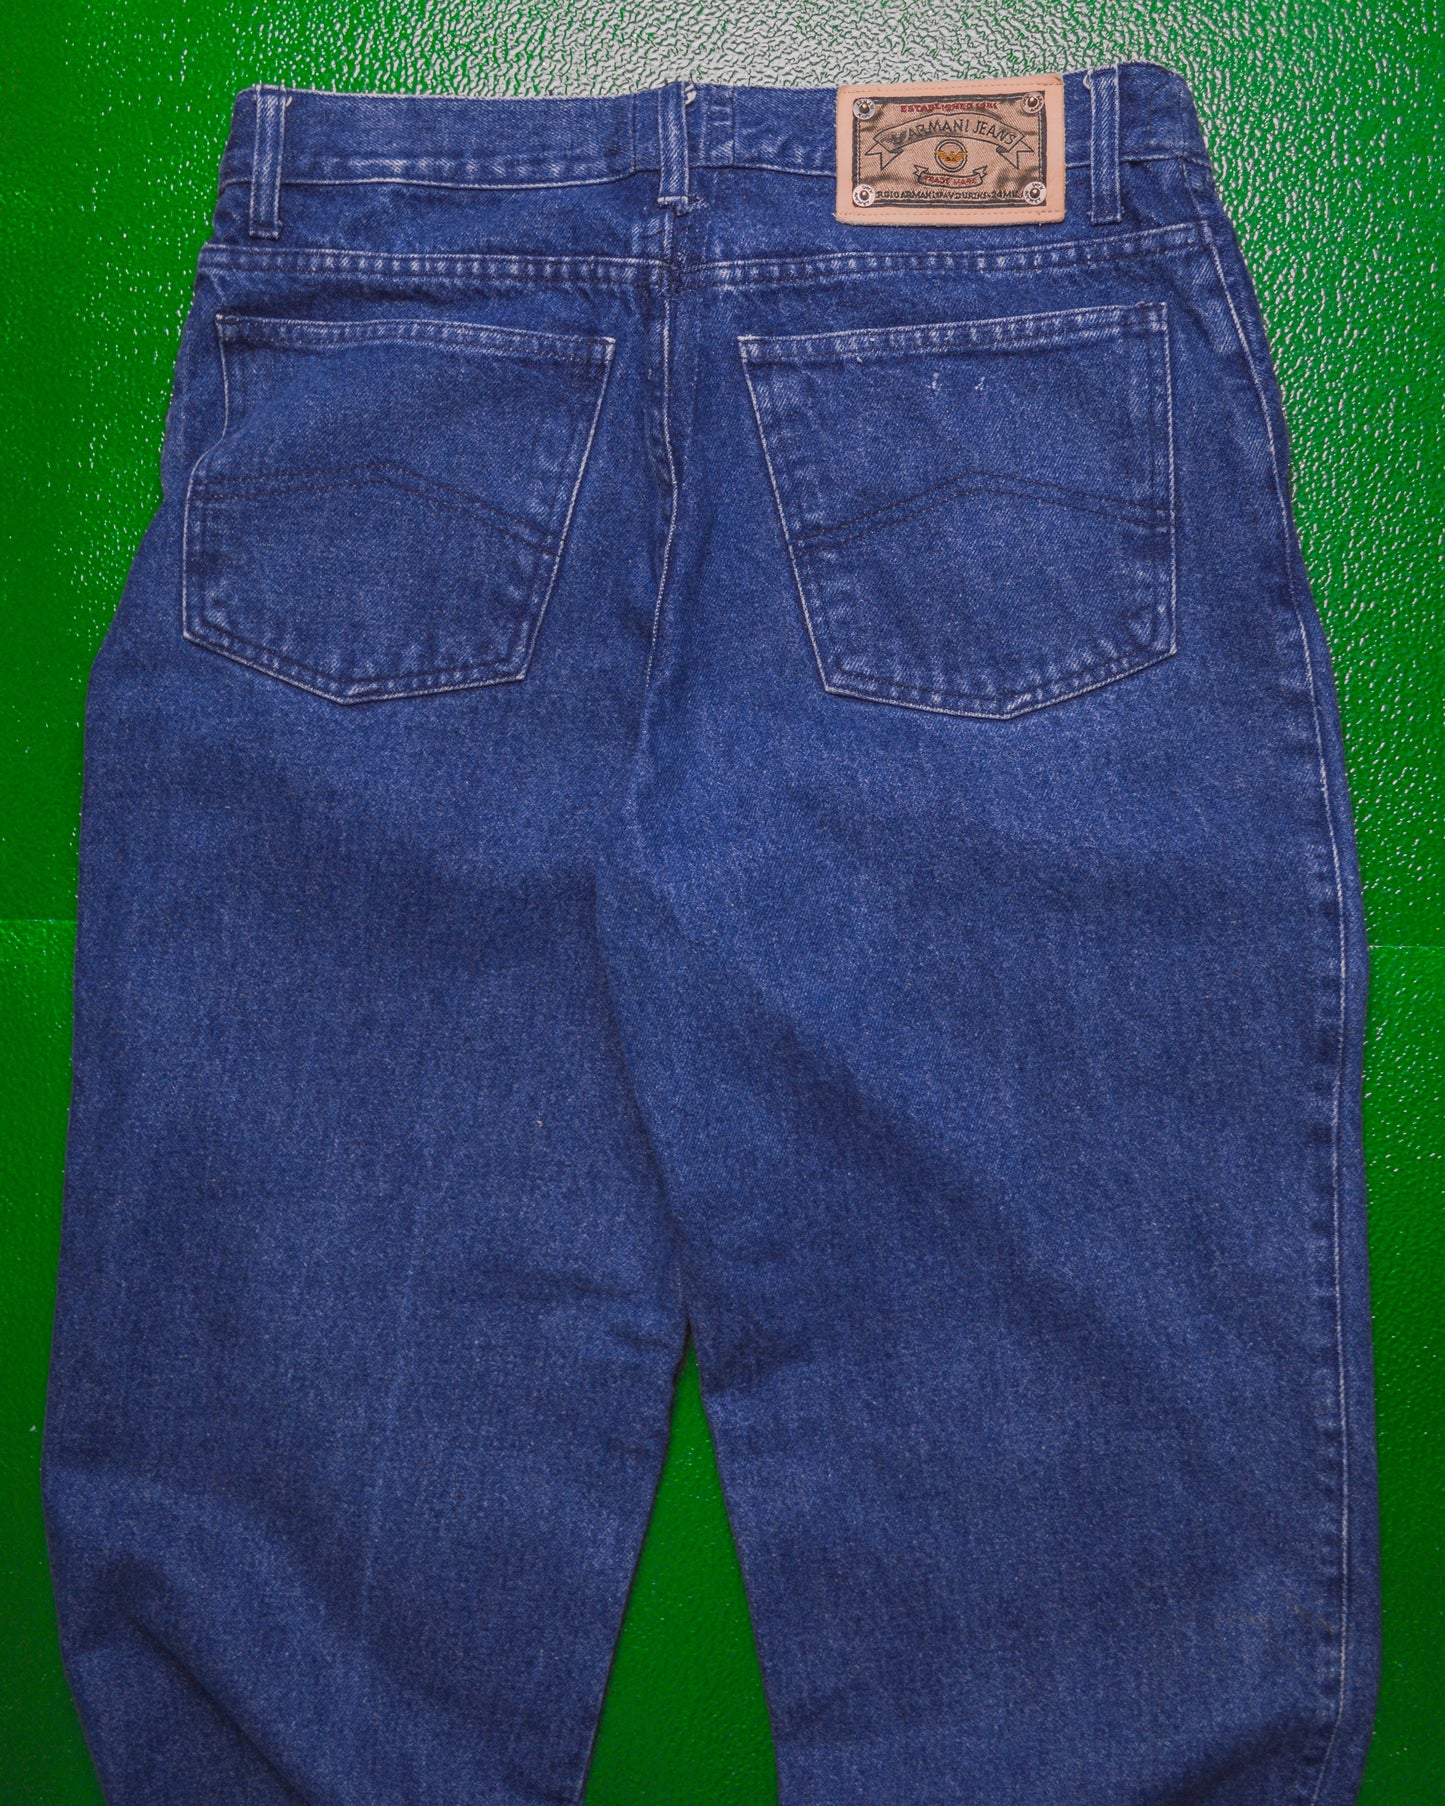 90s Dark Wash Jeans (32)